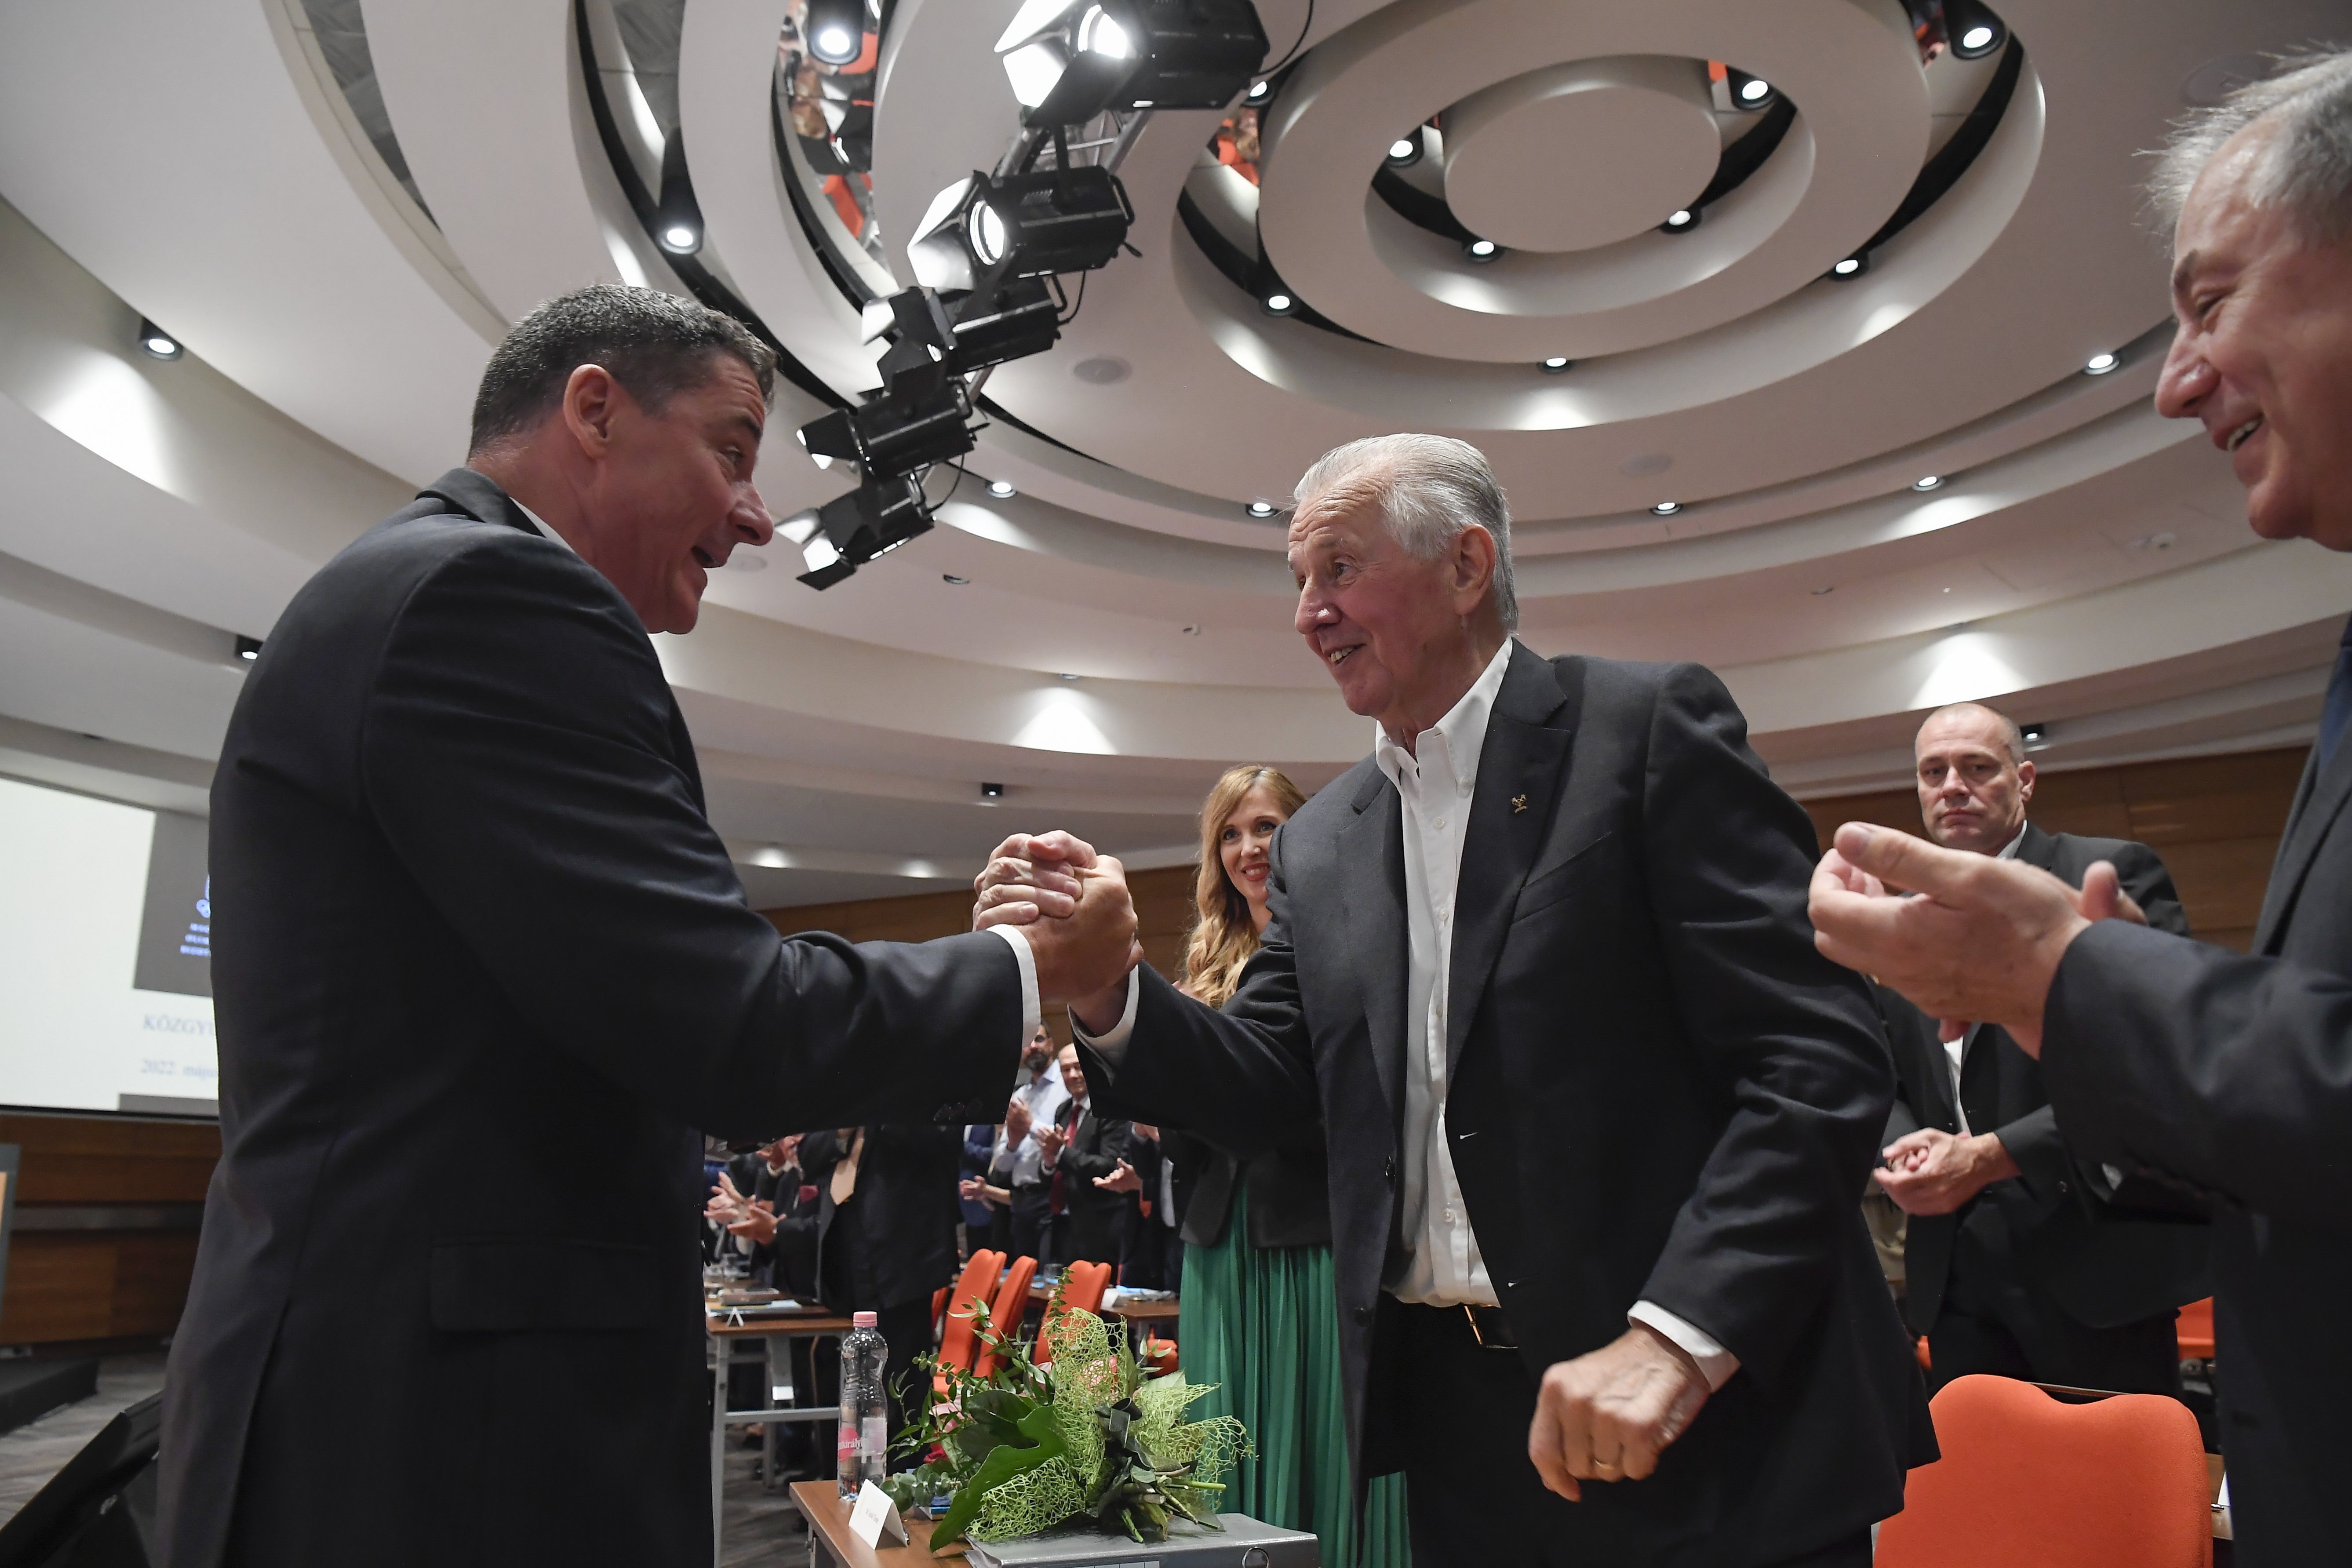 A MOB elnöke szerint Magyarország erkölcsi kötelessége, hogy pályázzon az olimpiarendezésre